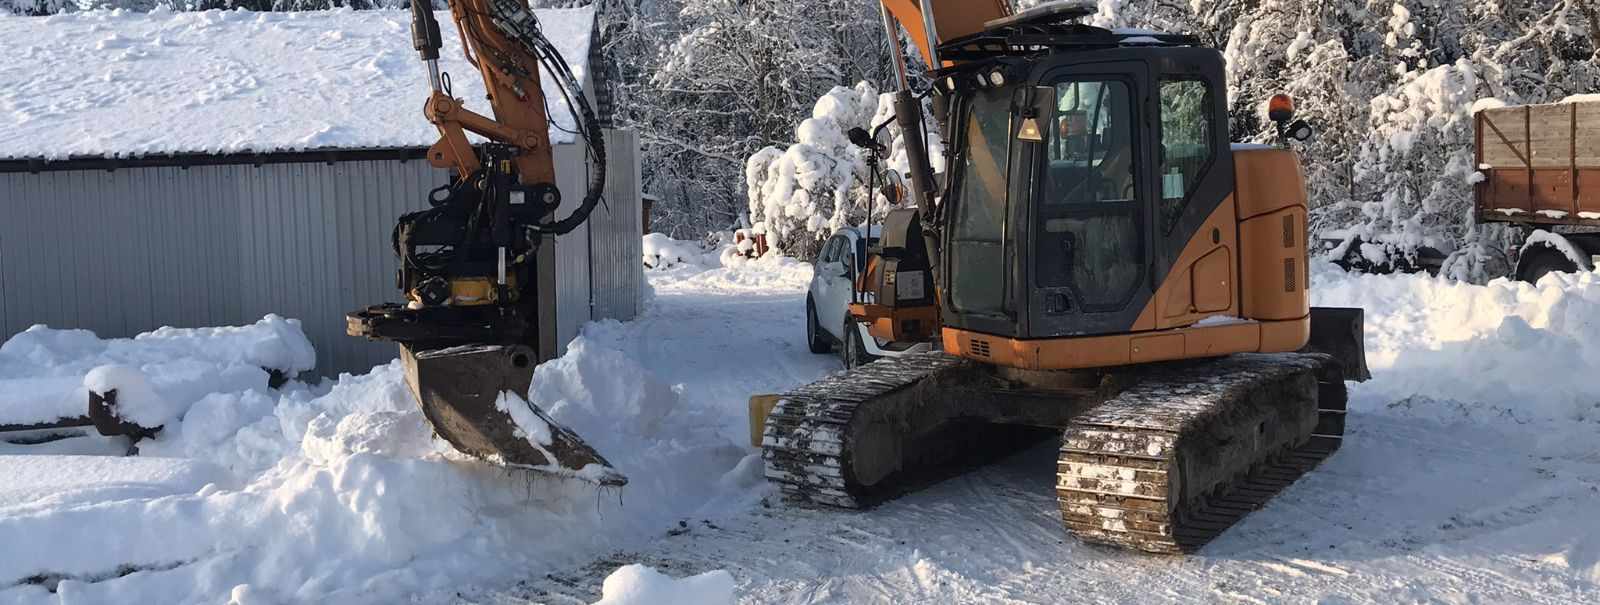 Kui talv saabub, muutub lume eemaldamine Rapla ja Harju maakondades kriitiliseks ülesandeks kohalikele omavalitsustele, ehitusfirmadele ja eramaa omanikele. Tõh